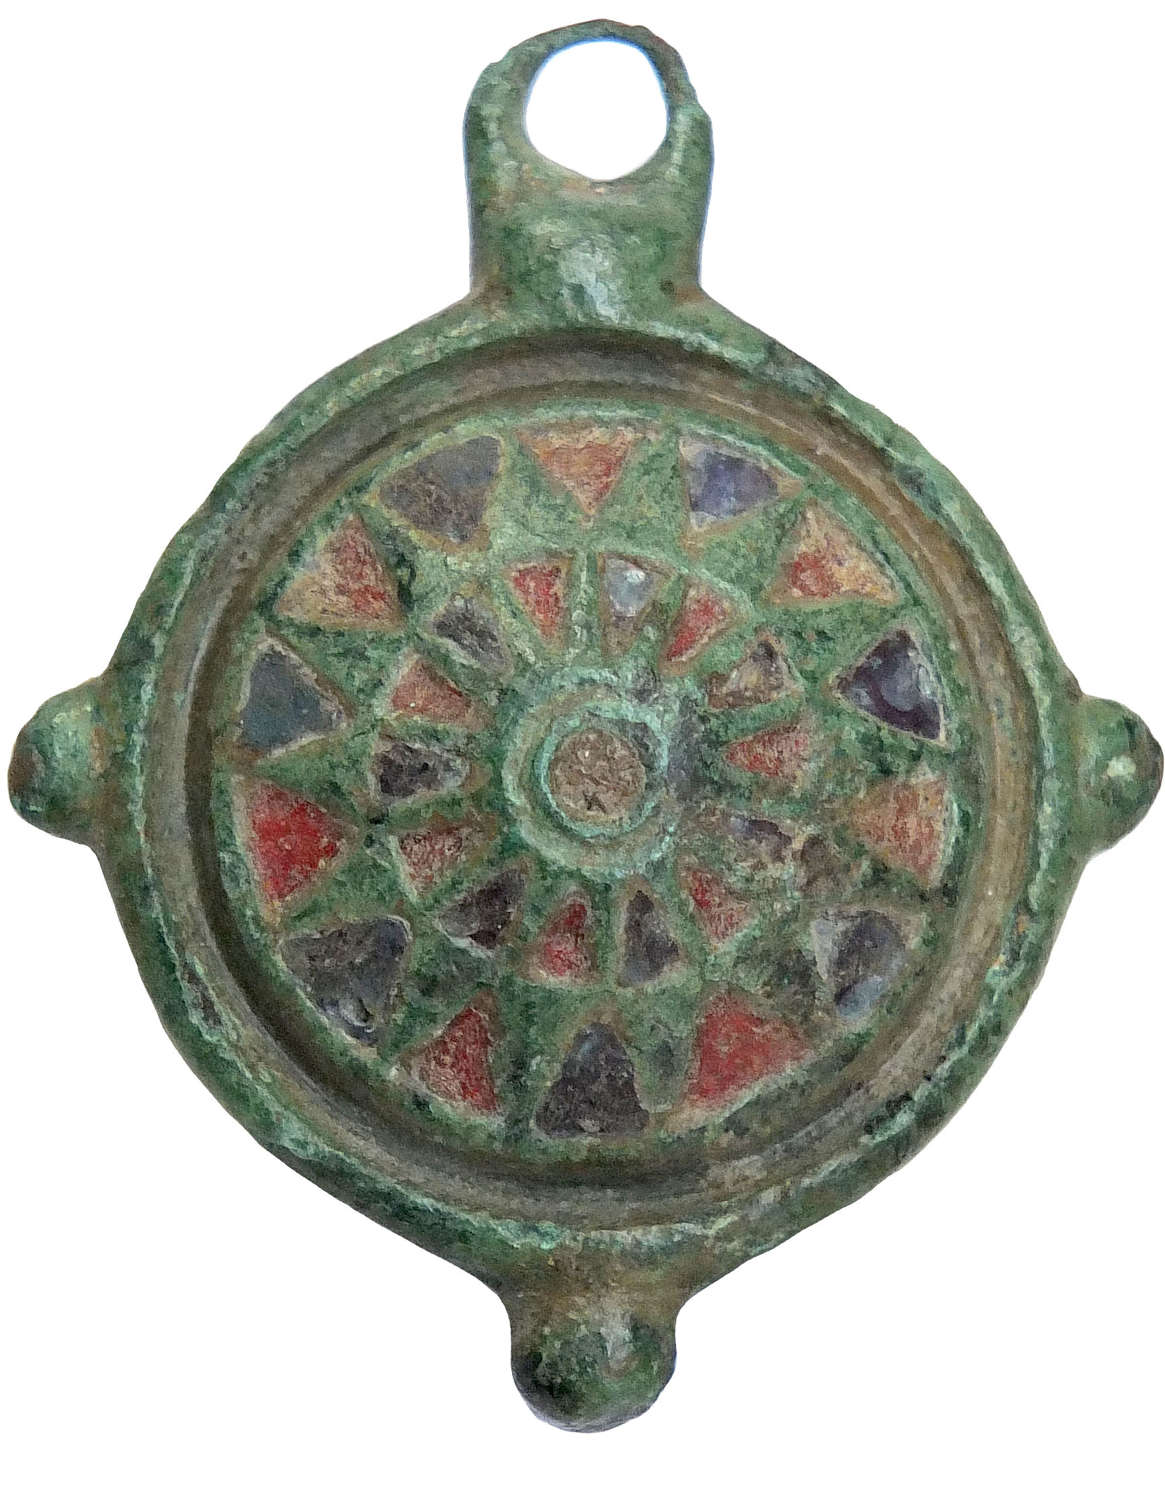 A Roman bronze umbonate disc brooch, c. 2nd Century A.D.